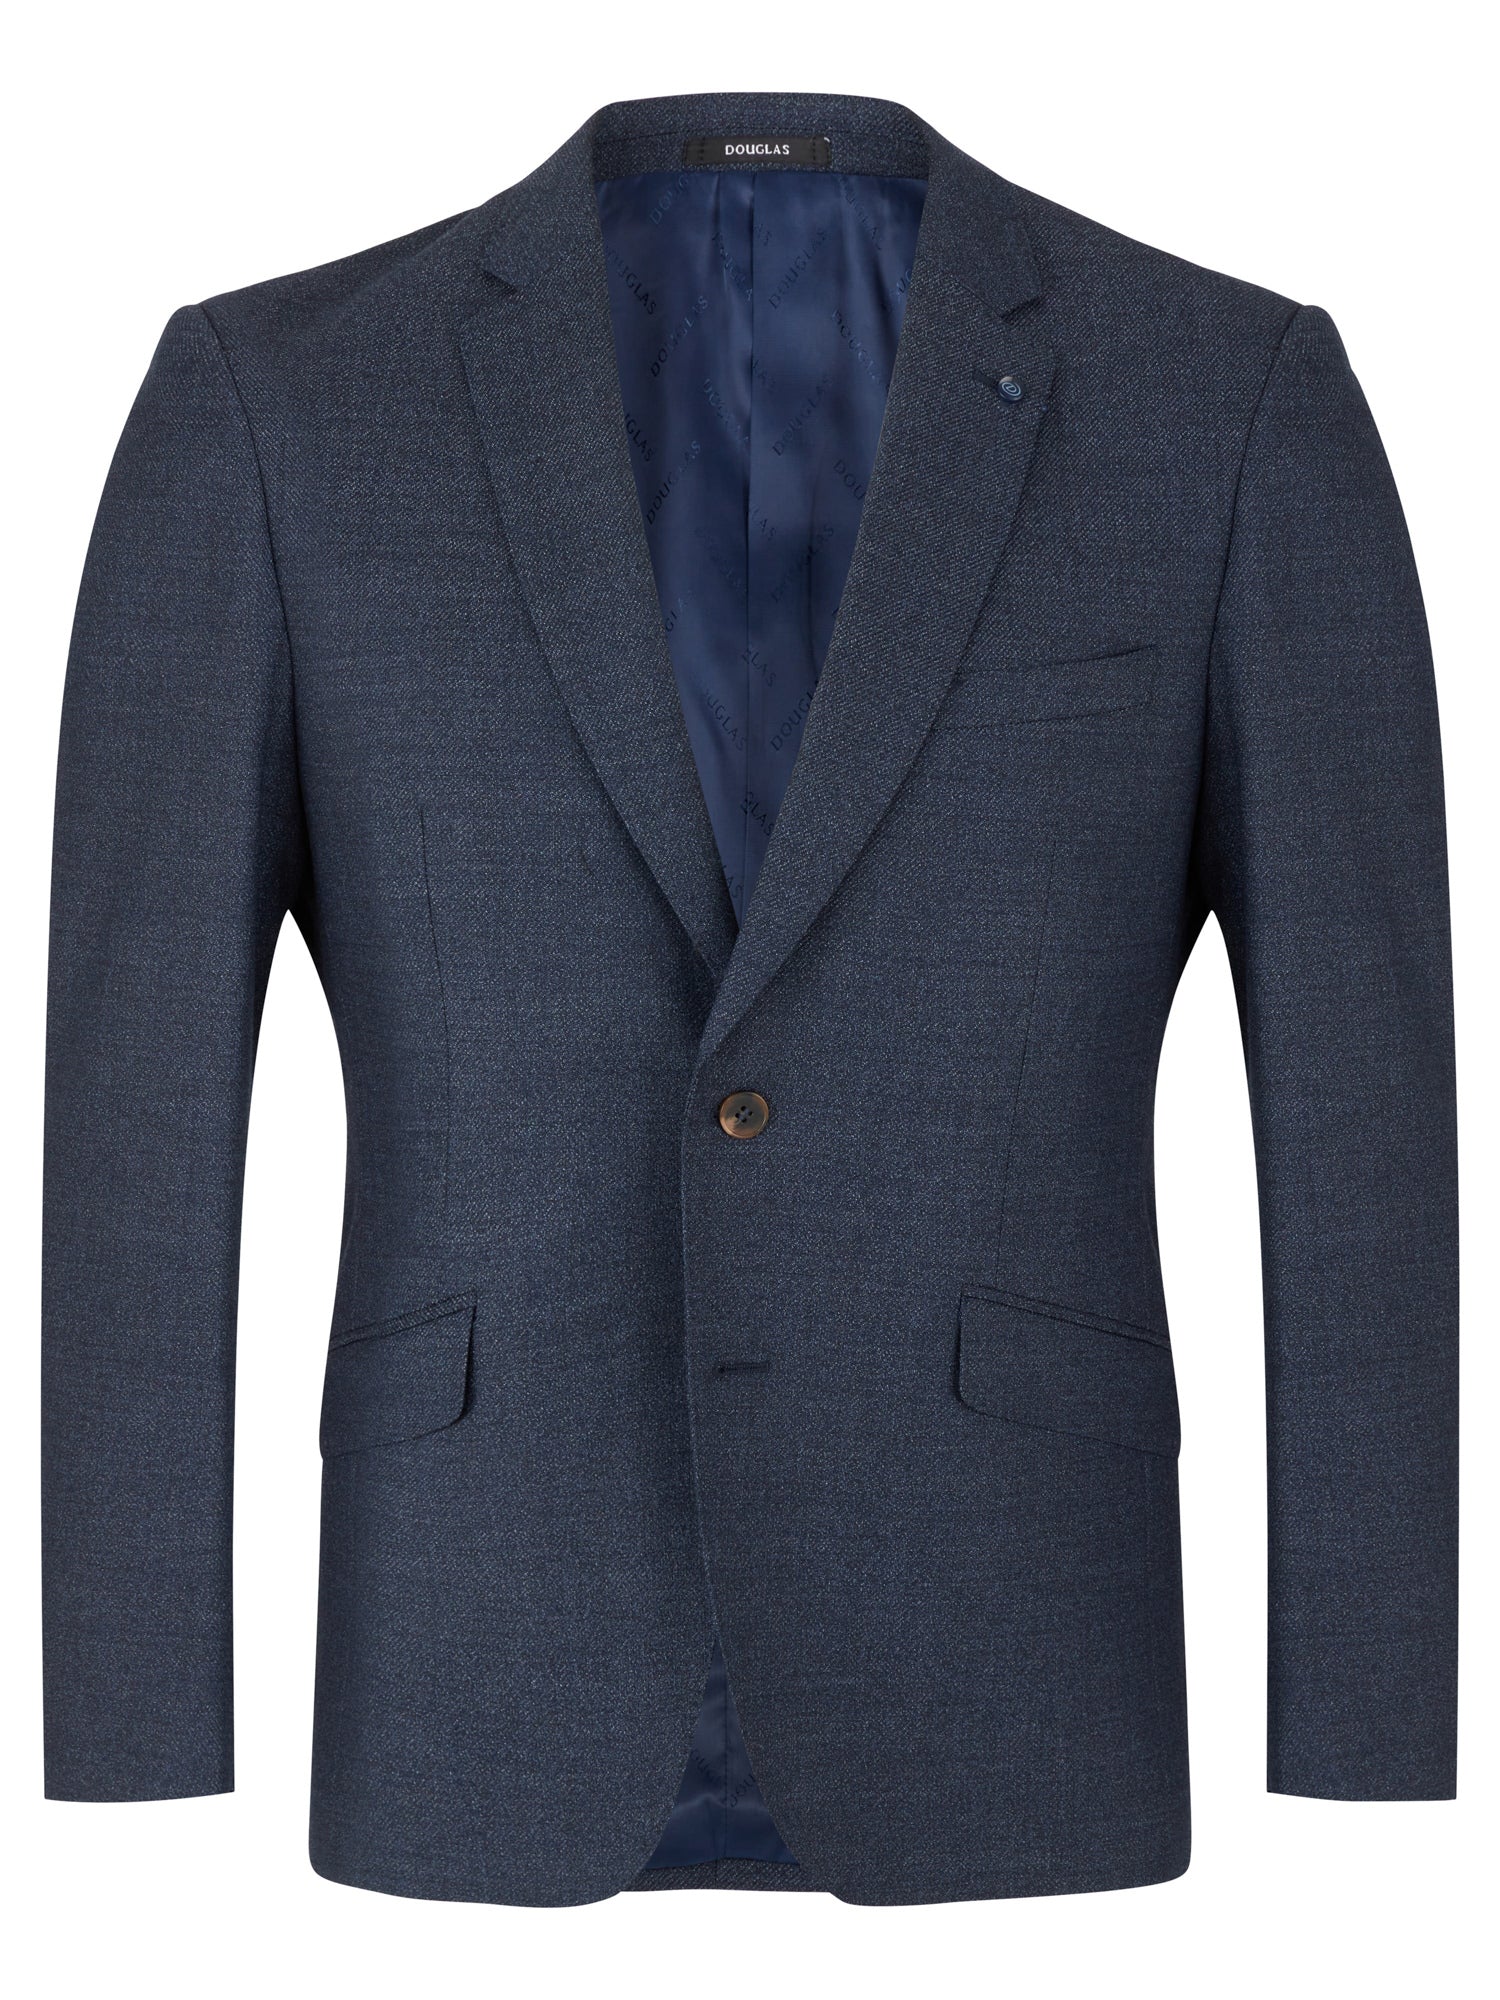 Douglas Blue Mix & Match Romelo Suit Jacket Long Length